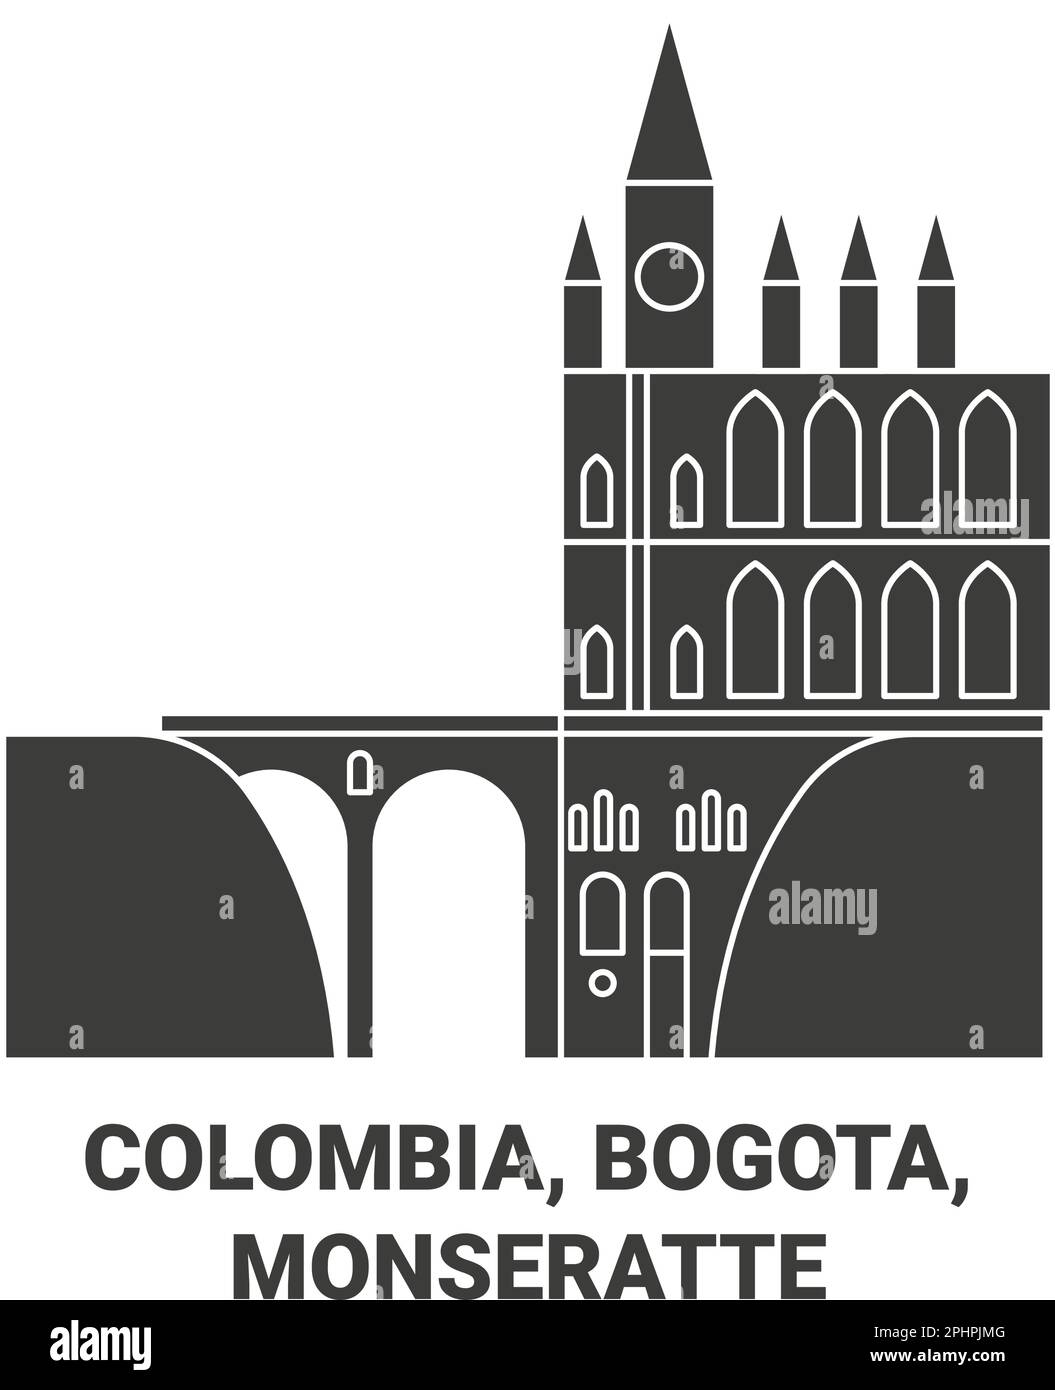 Colombia, Bogota ,Monseratte travel landmark vector illustration Stock Vector